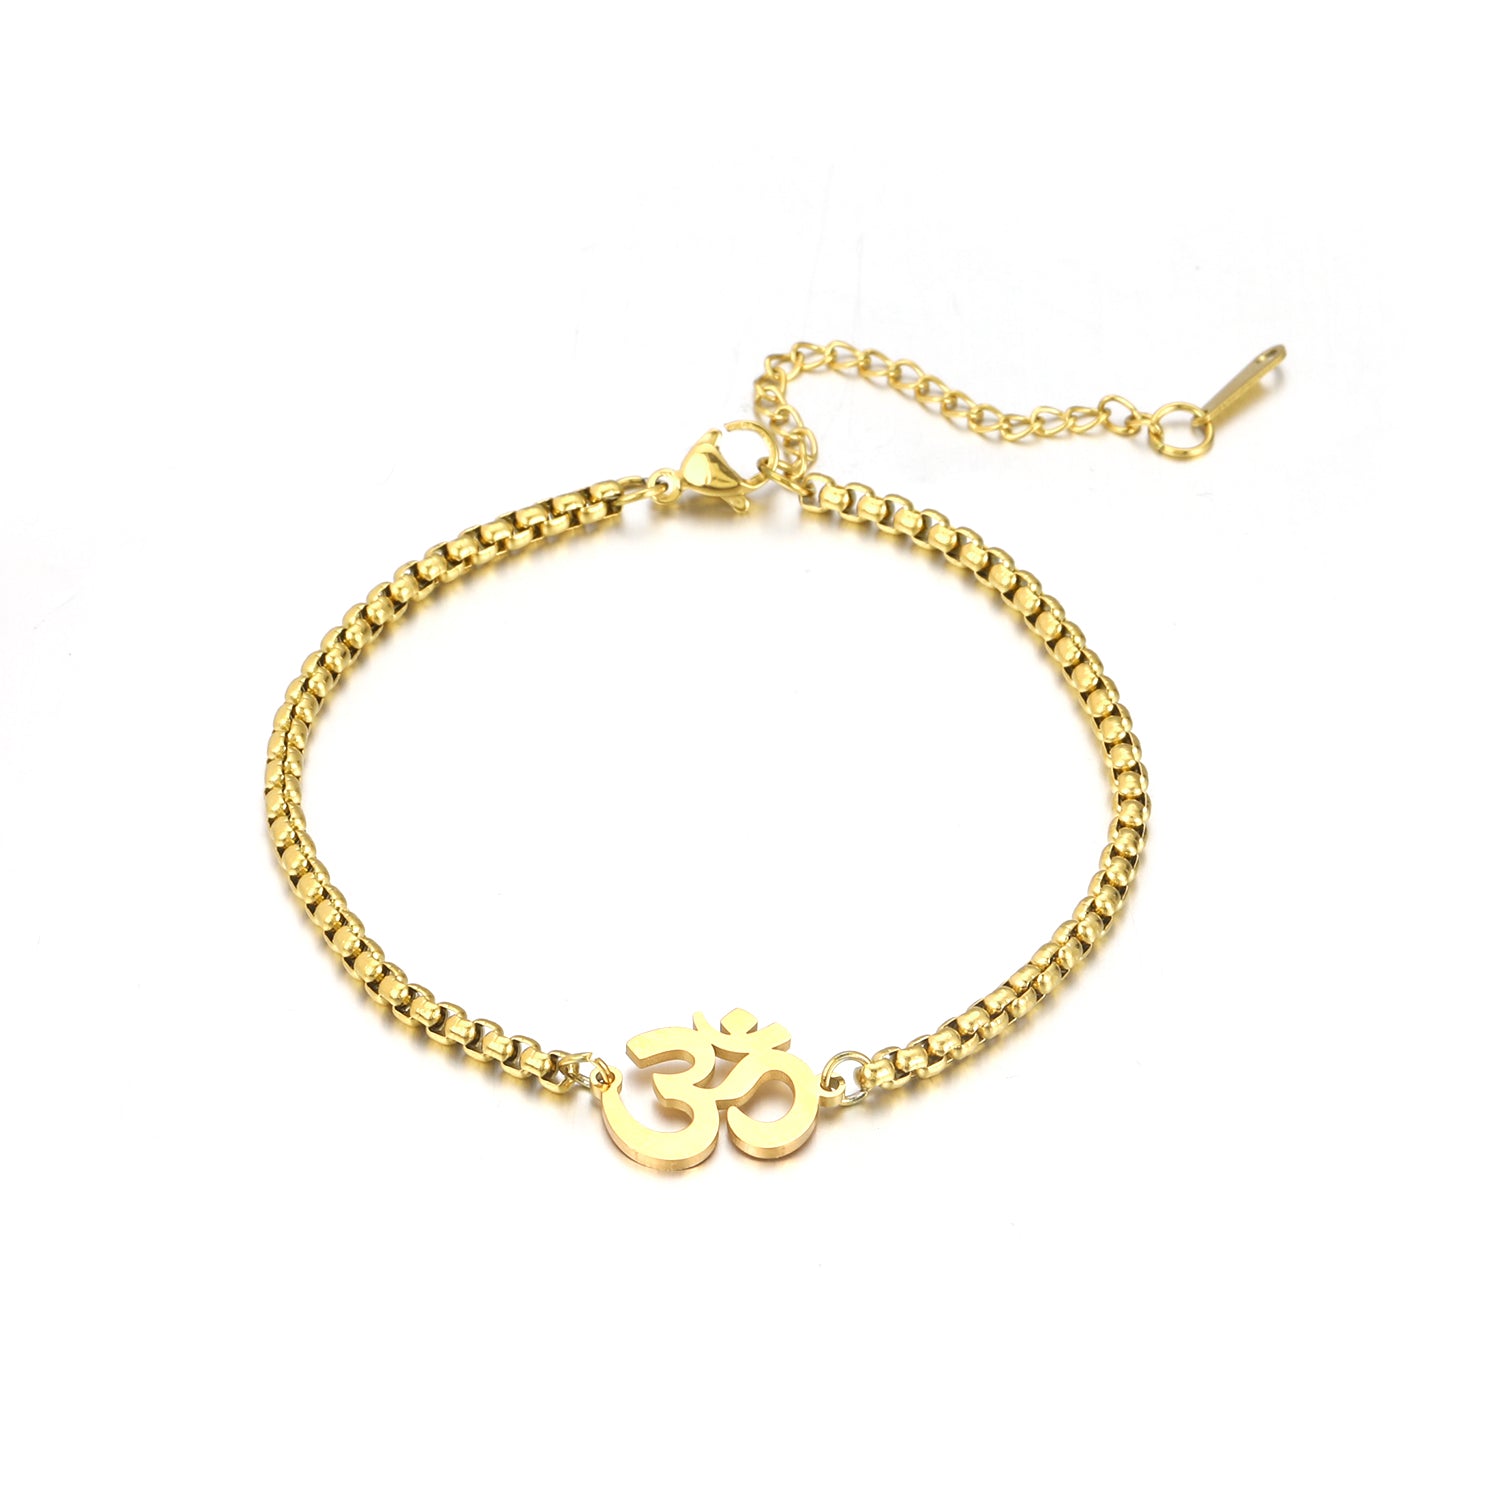 Modern Gold Bracelet Designs For Women | Daily Wear Simple Bracelet Designs  | Mangalsutra bracelet | Modern Gold Bracelet Designs For Women | Daily  Wear Simple Bracelet Designs | With weight and